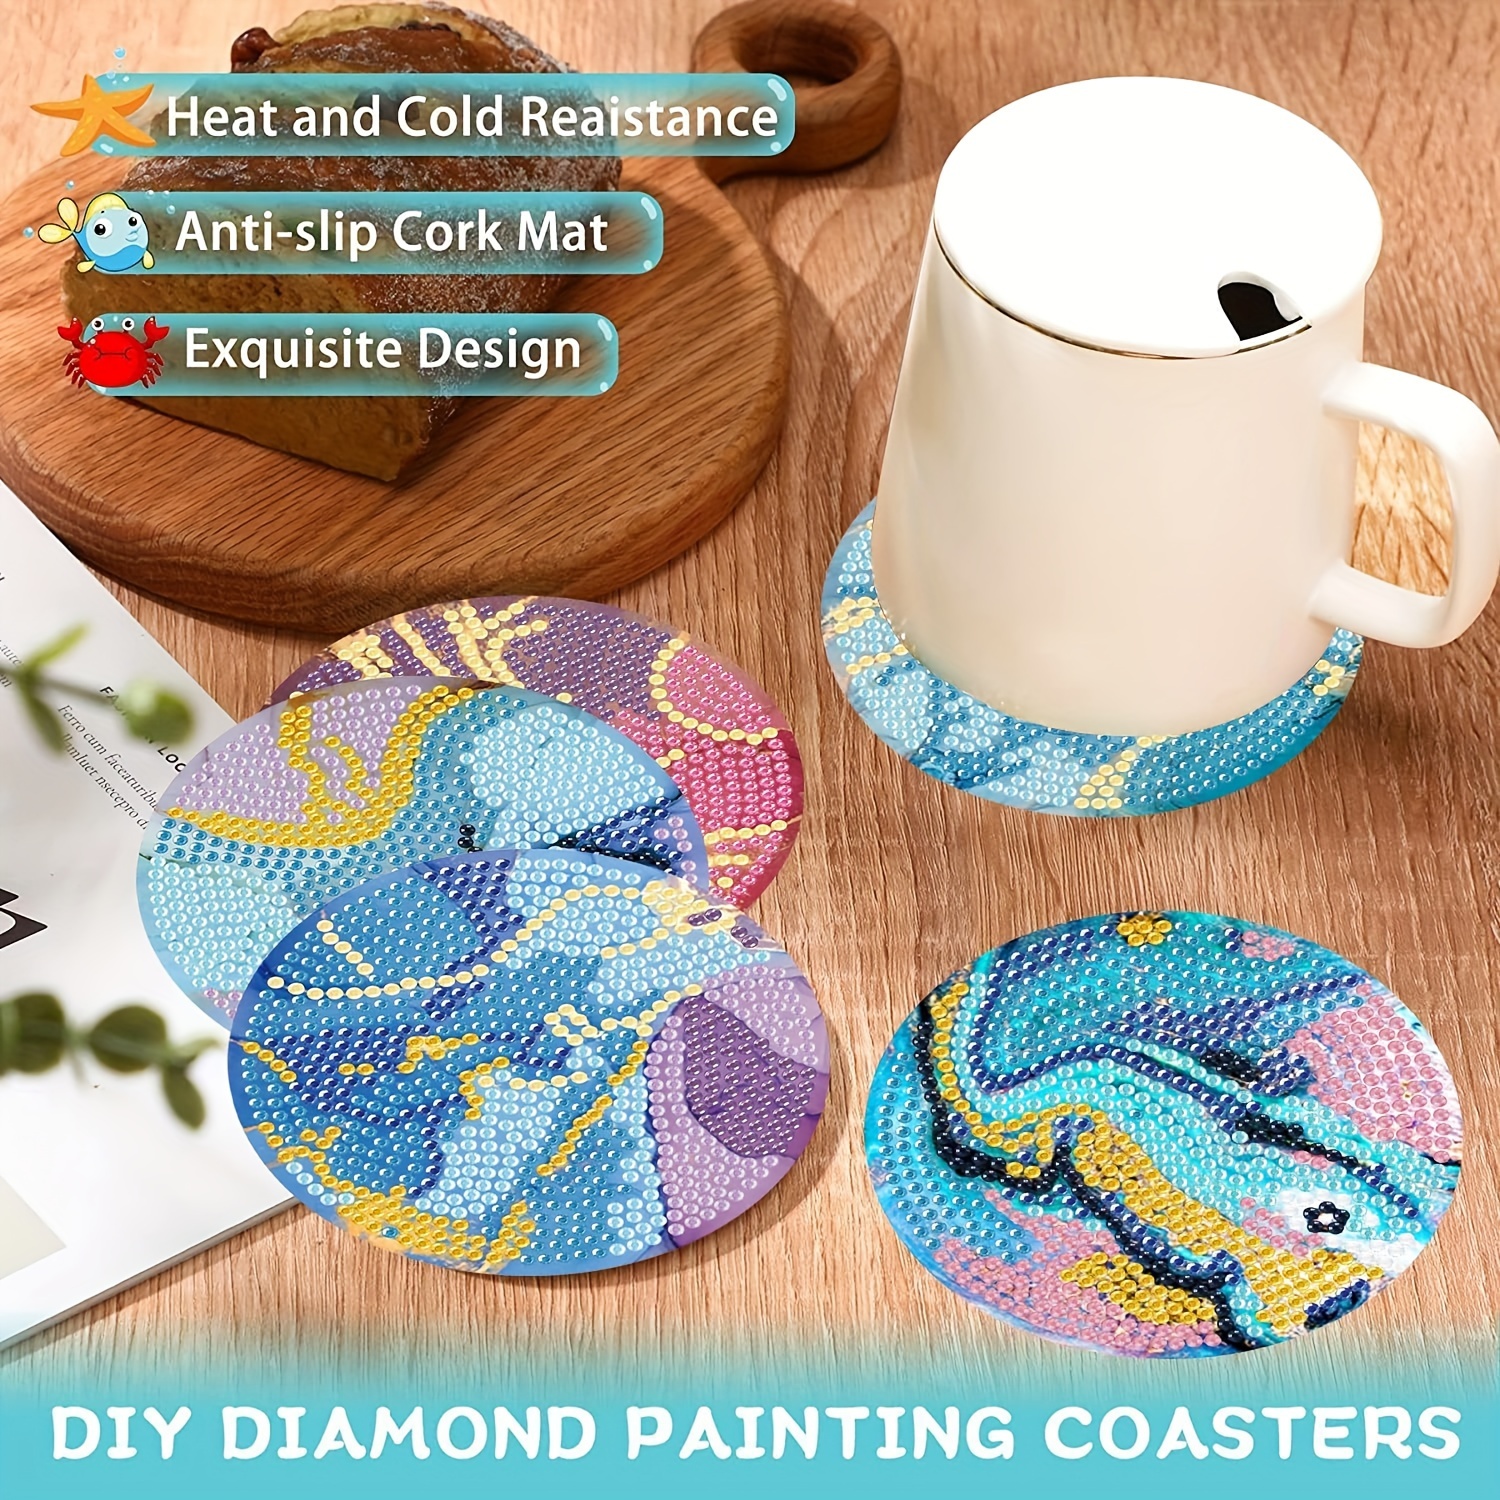 8pcs Diamond Painting Coaster Set With Stand, Diy Cartoon Cup Mat